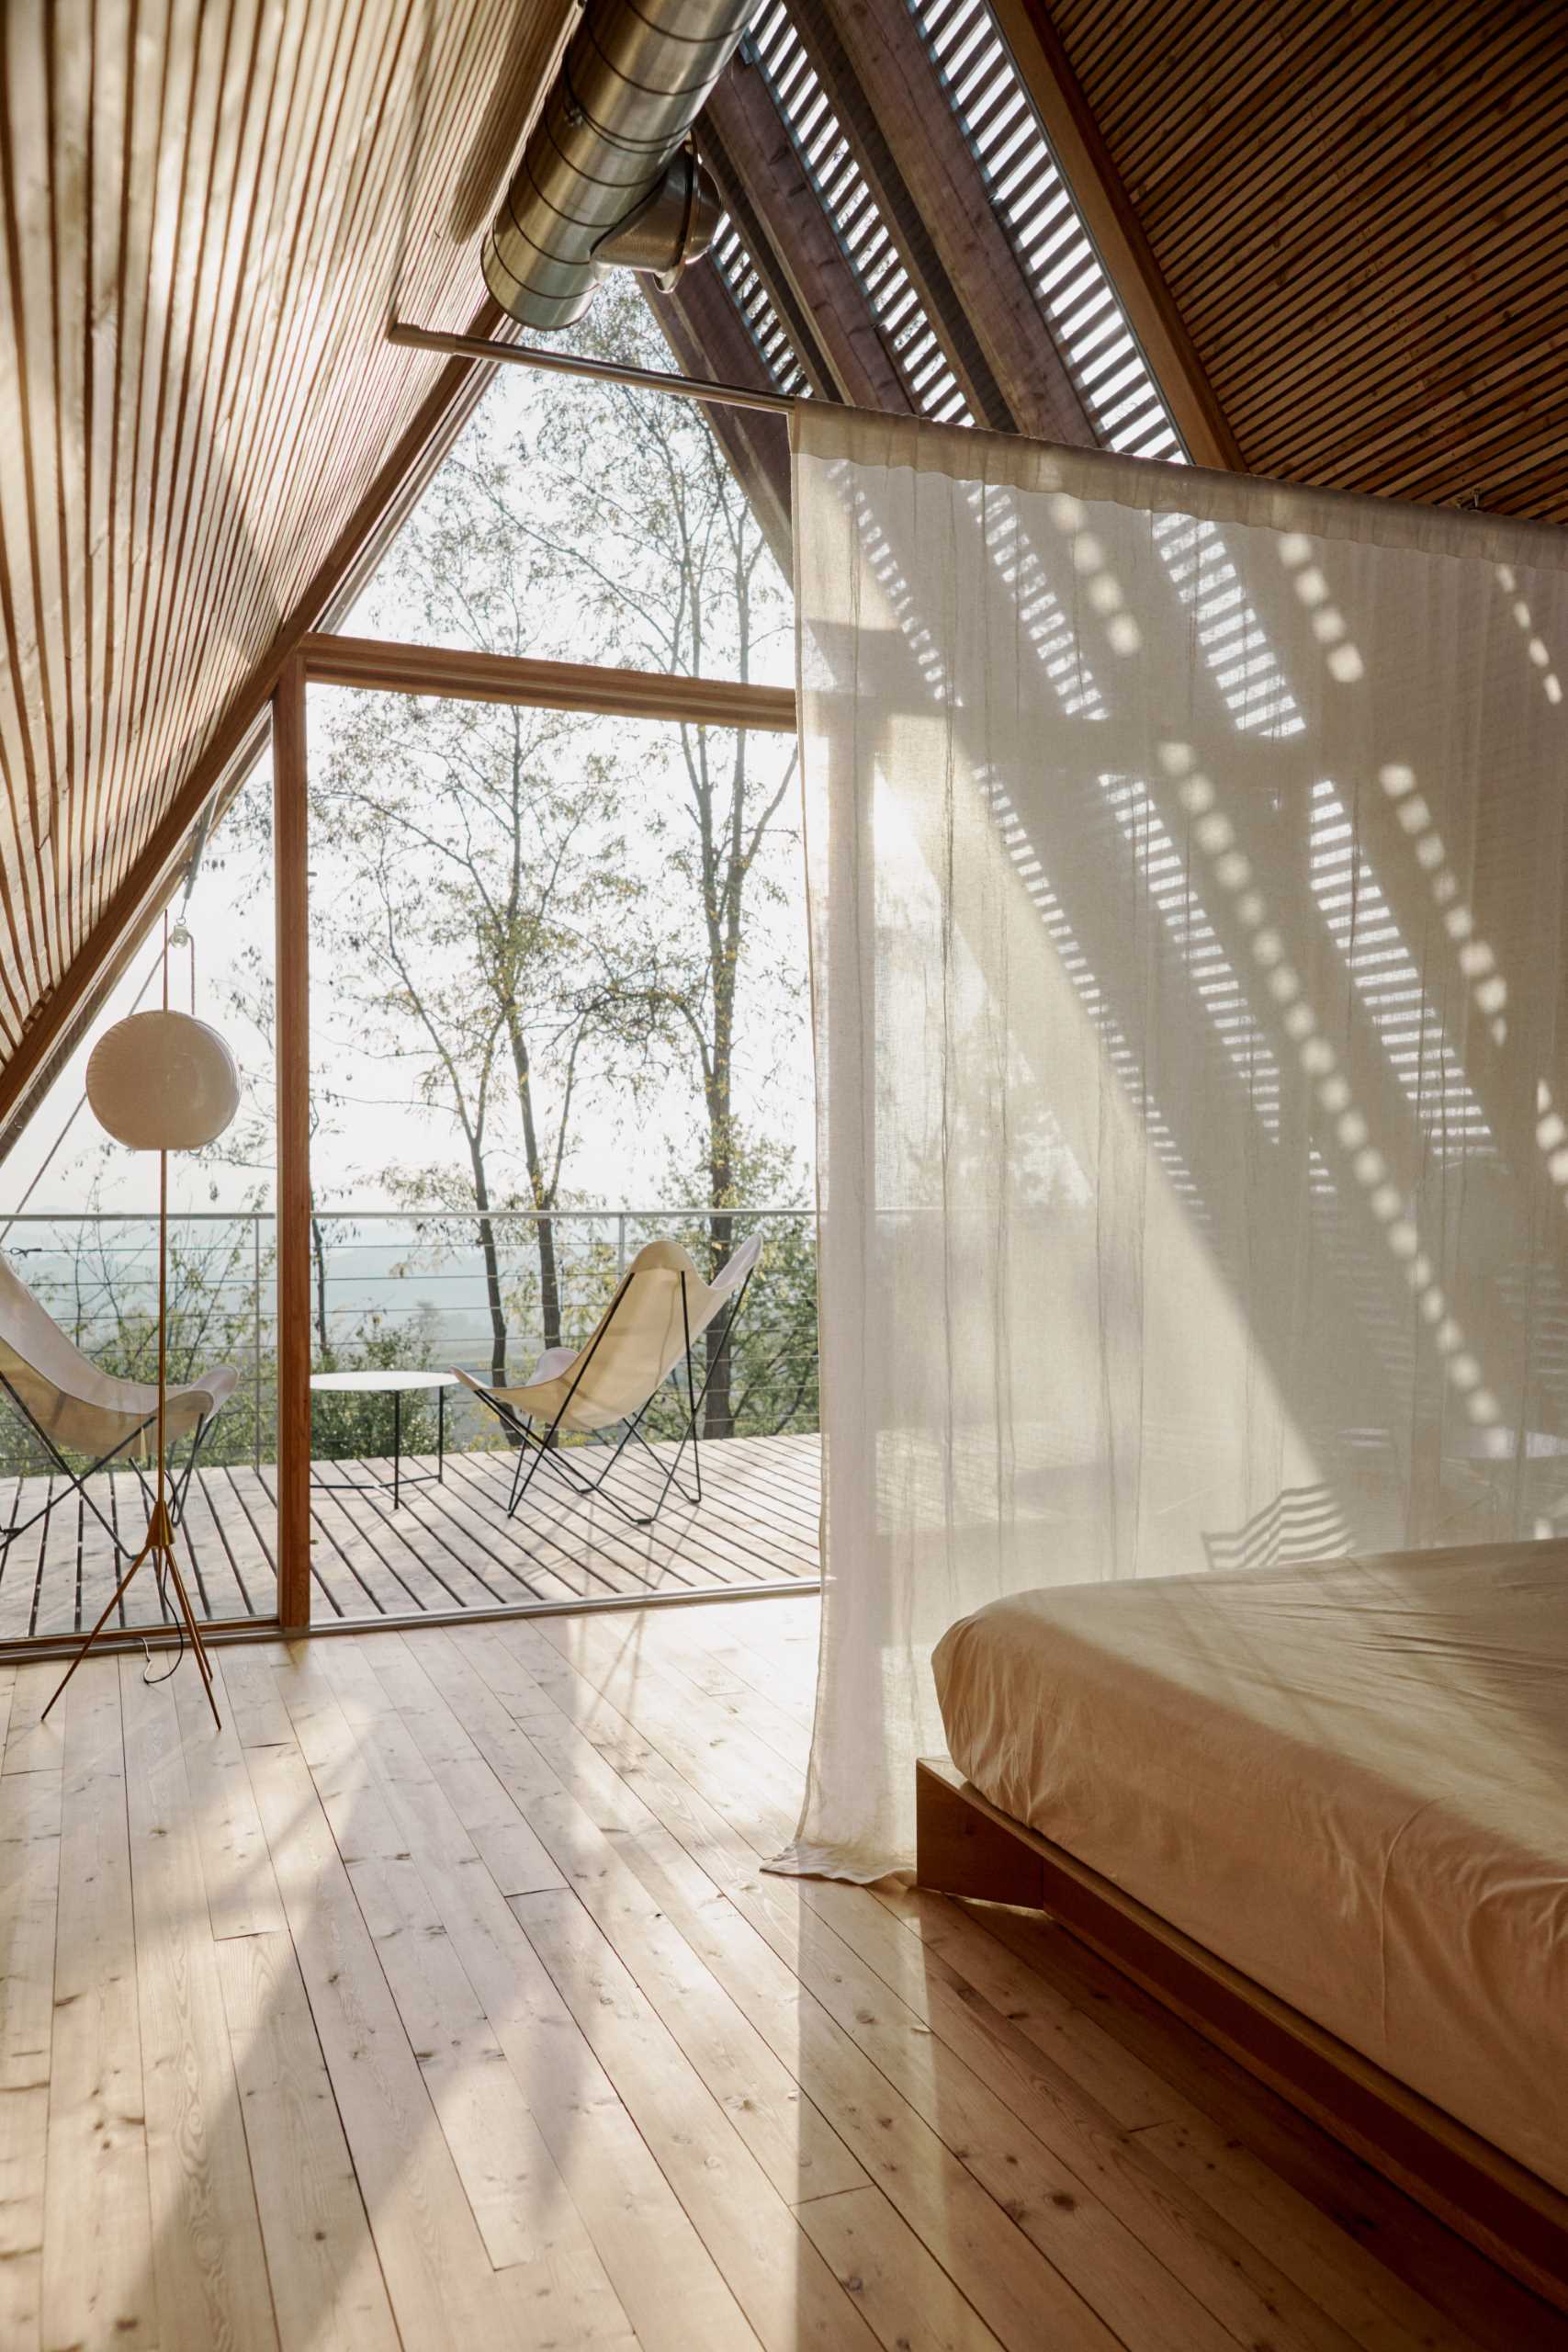 Rèm cửa dài treo từ trần nhà và tạo sự riêng tư cho khu vực ngủ nghỉ khi đóng cửa.